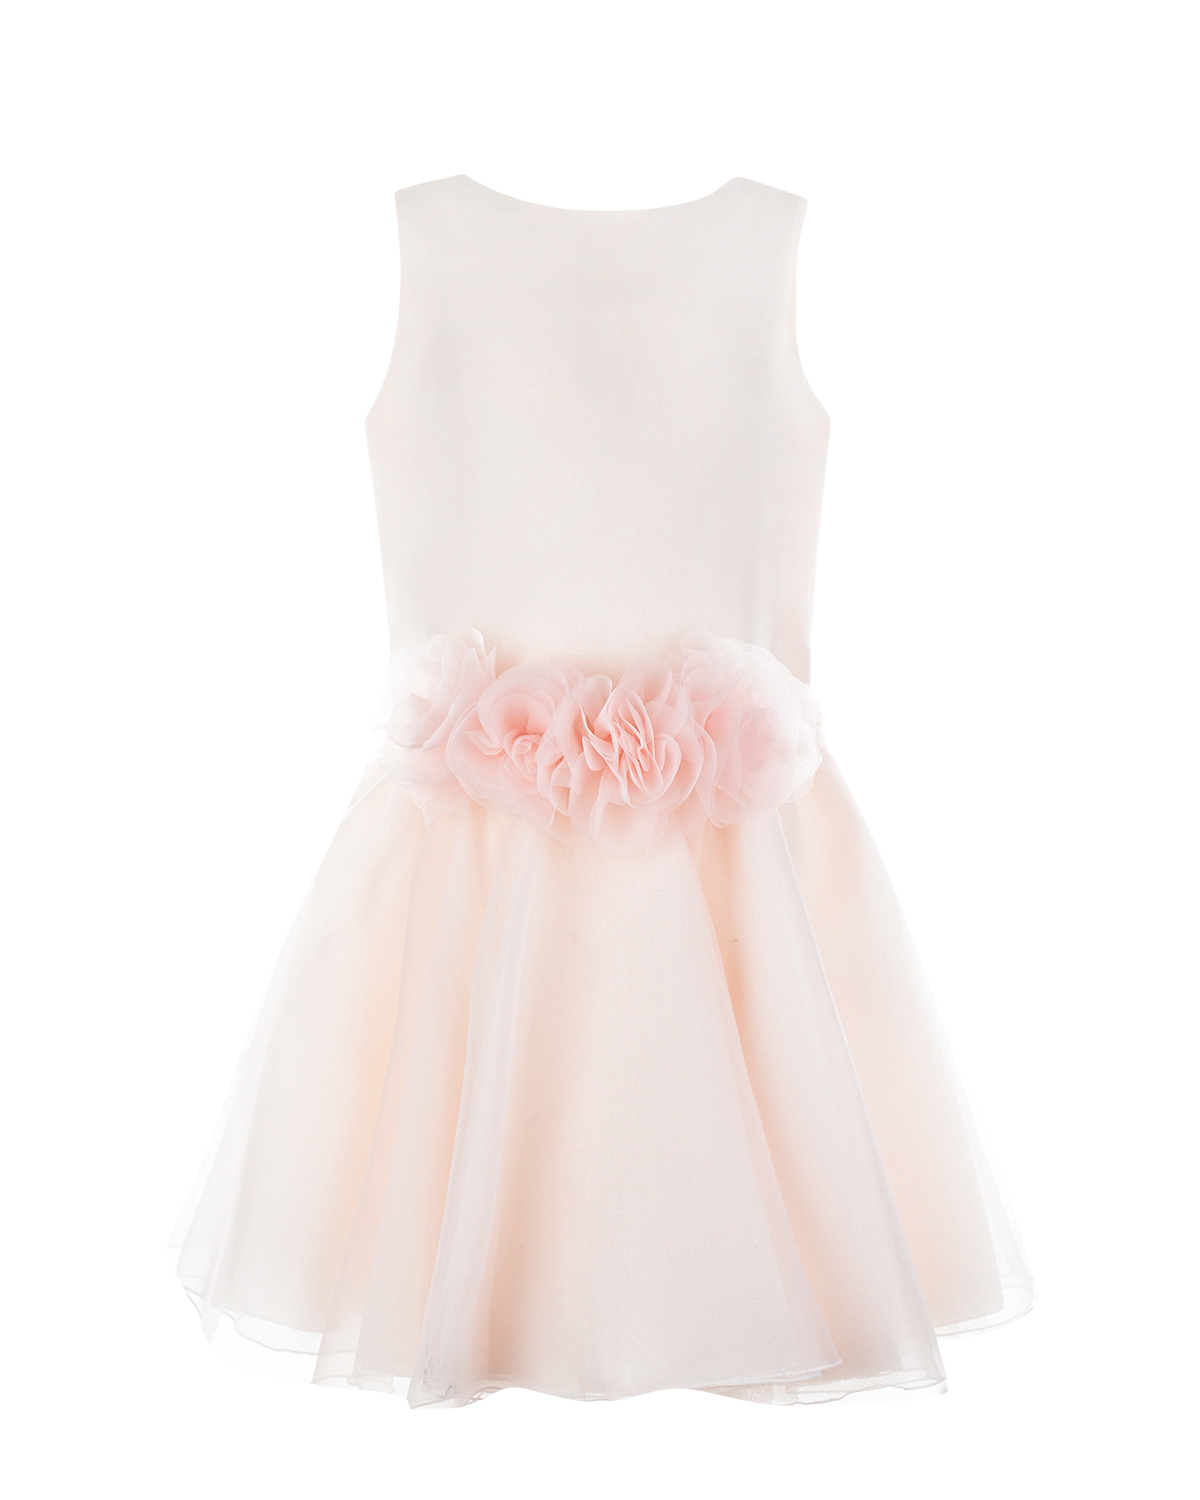 Розовое платье с цветами на талии Aletta